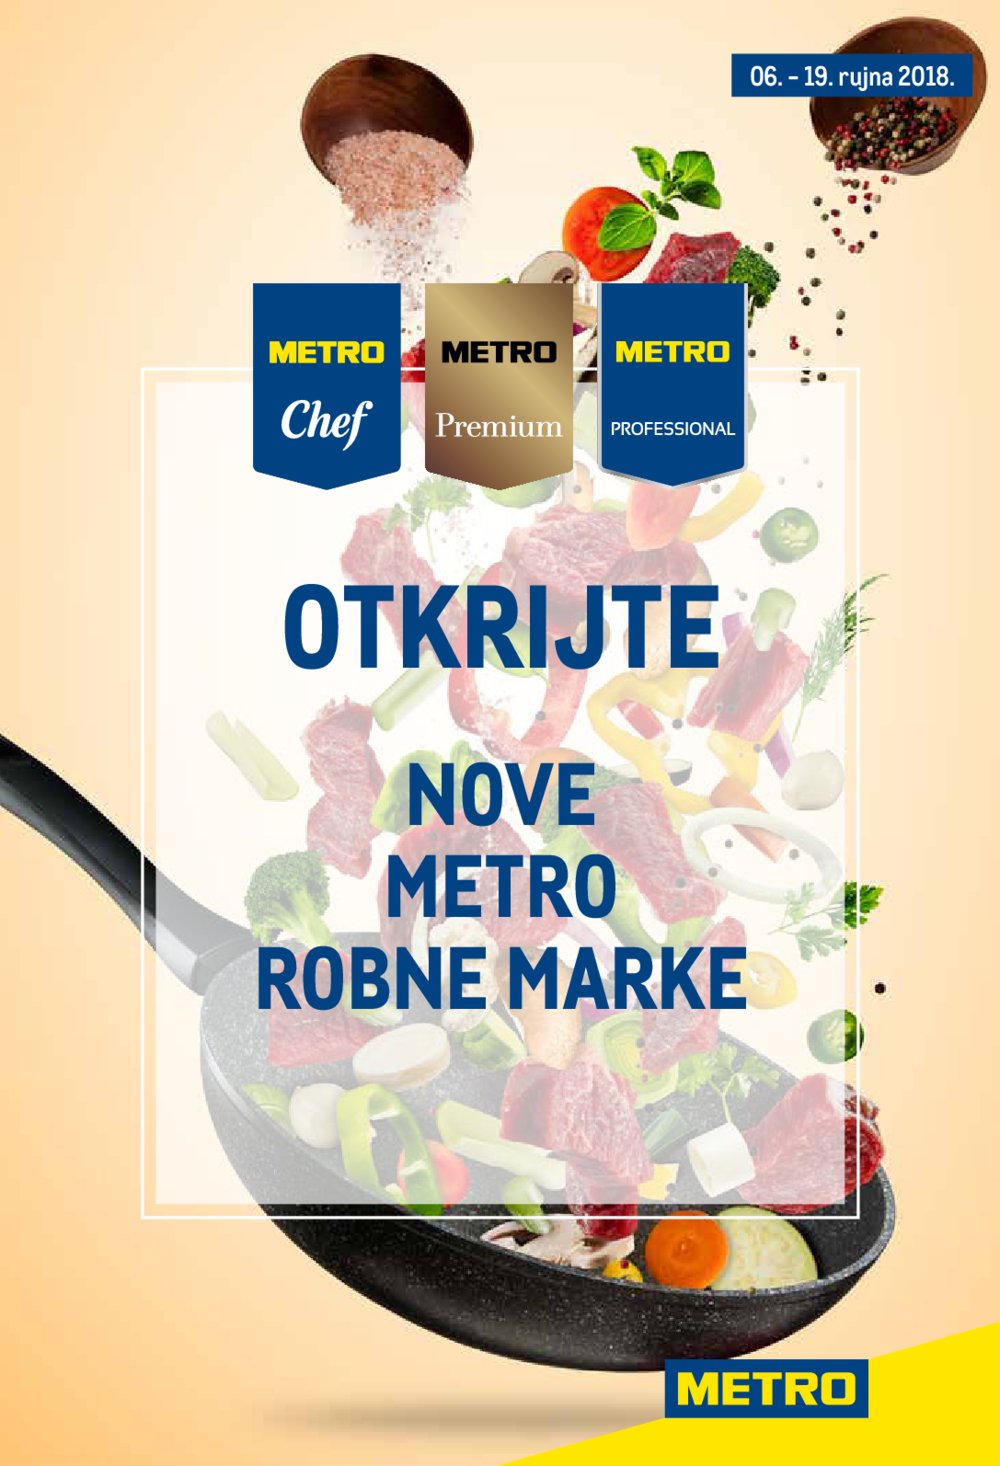 Metro Posebna ponuda Nove Metro Robne Marke 06.09. do 19.09.2018.